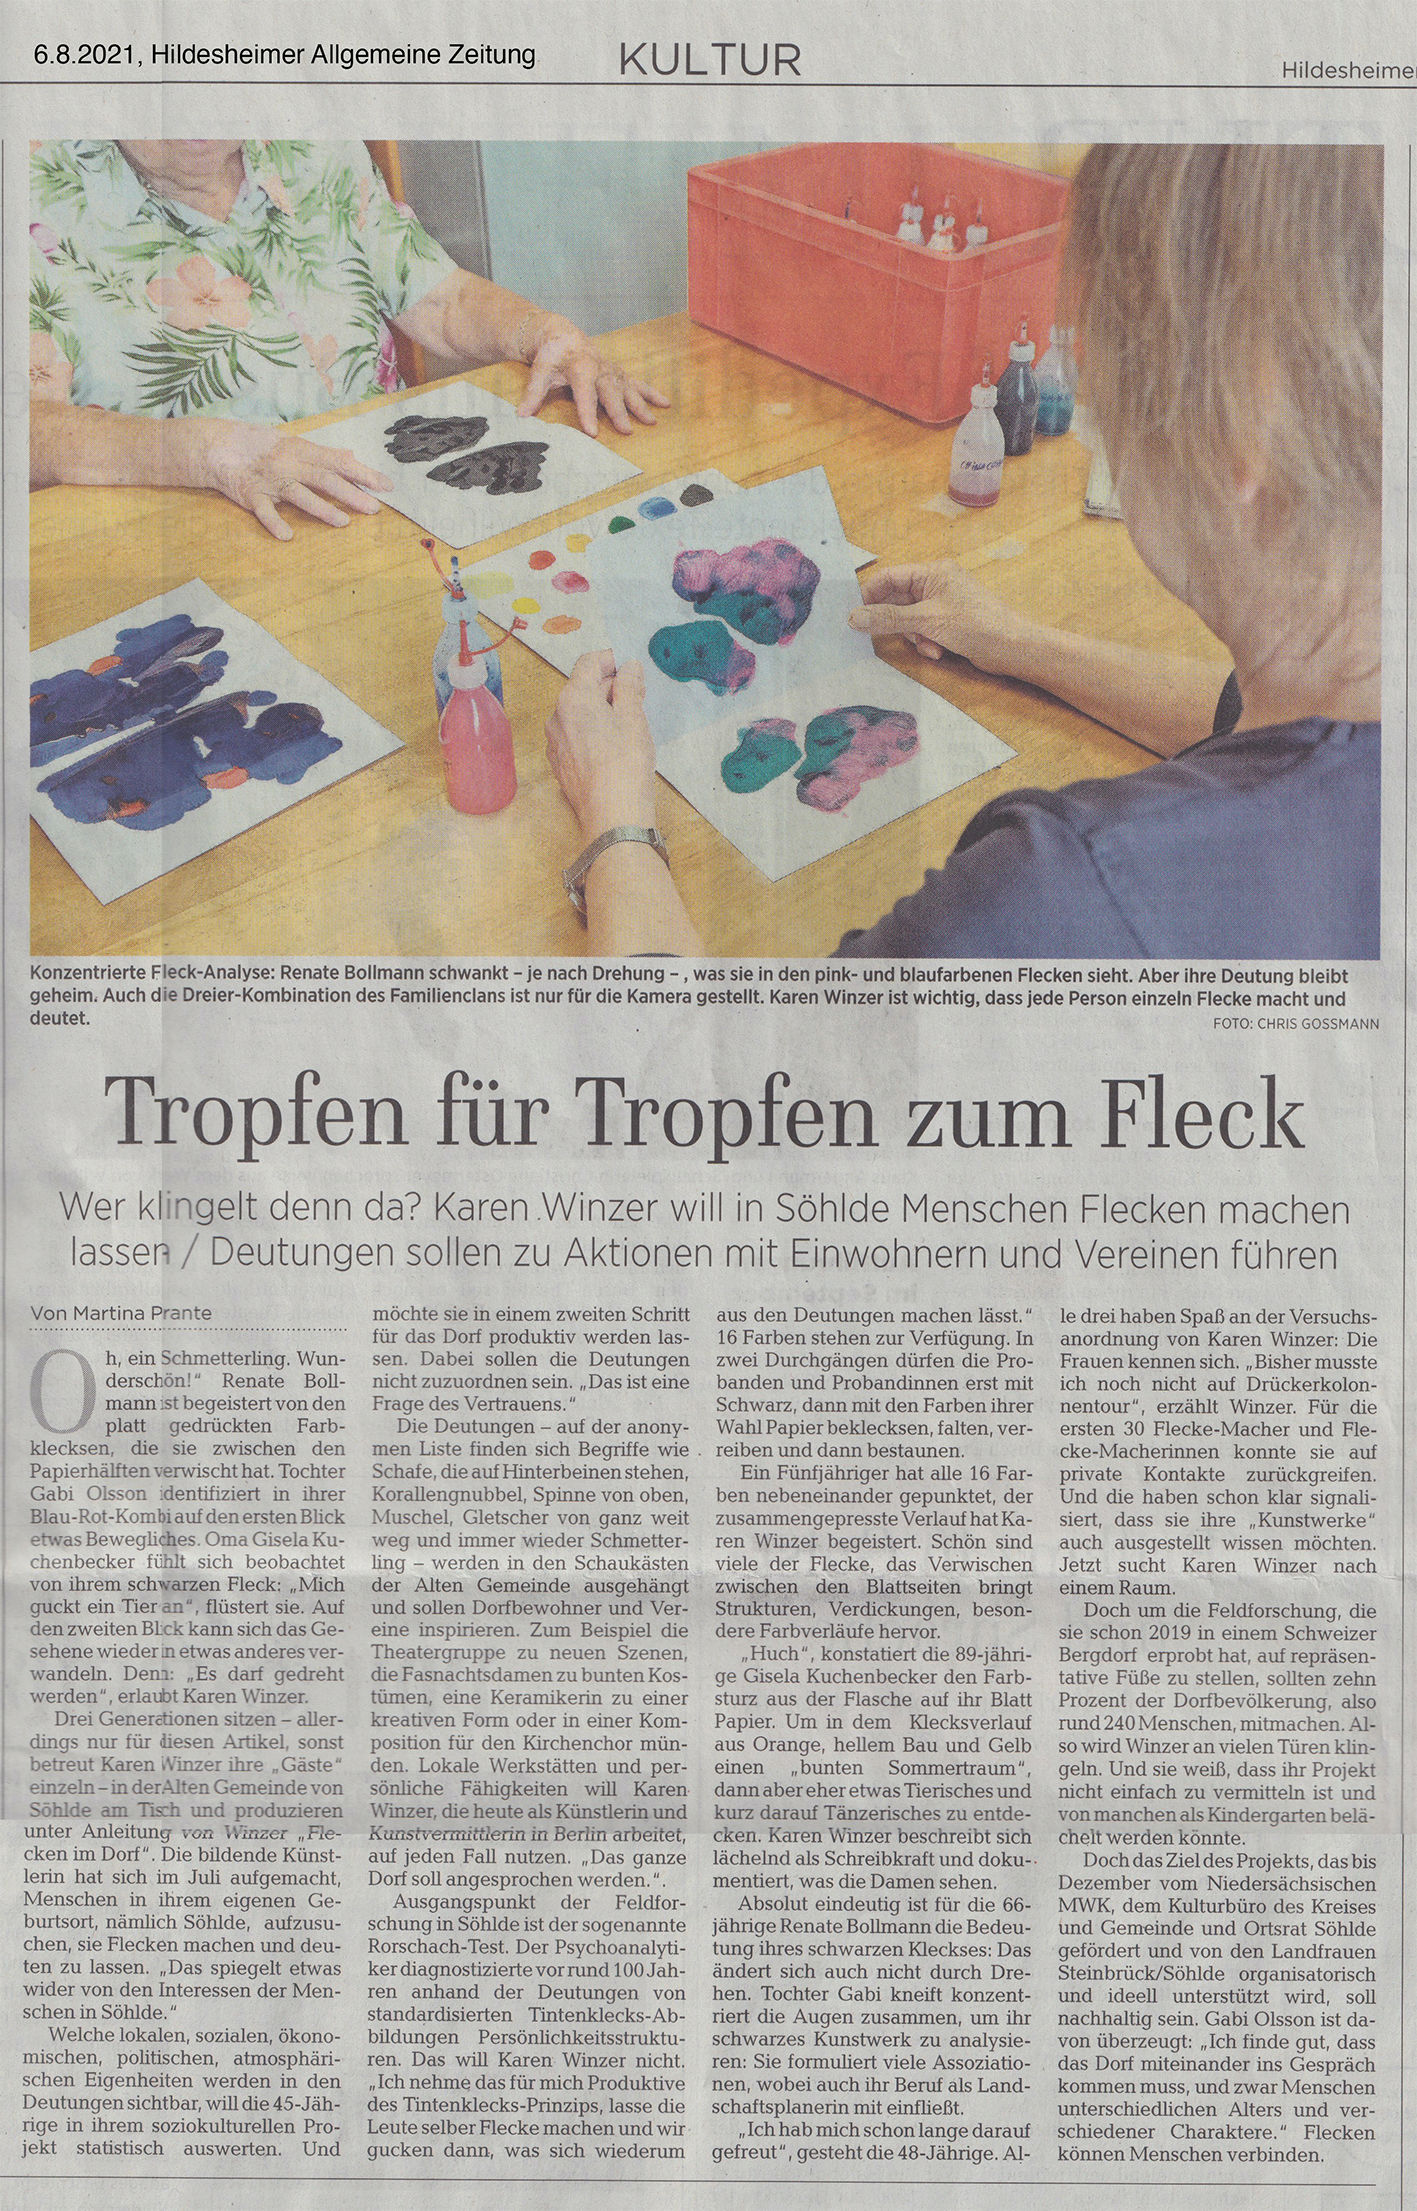 Artikel aus der Hildesheimer Allgemeinen Zeitung vom 6.8.2021 über Flecke im Dorf